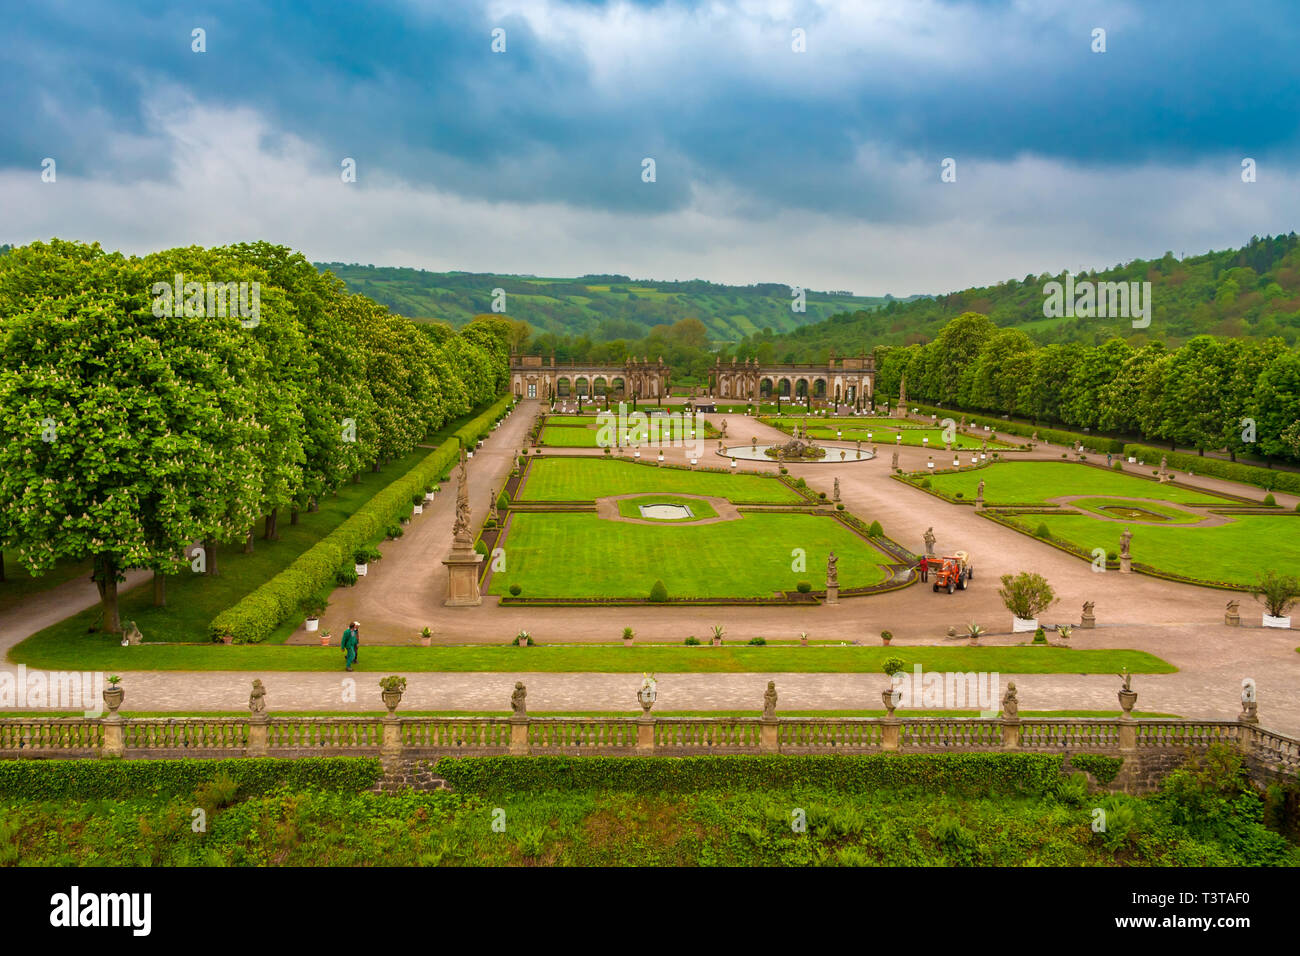 Gran vista aérea del hermoso jardín barroco del Palacio Weikersheim en el valle Tauber, enmarcadas por castaños de avenidas con el Hércules... Foto de stock